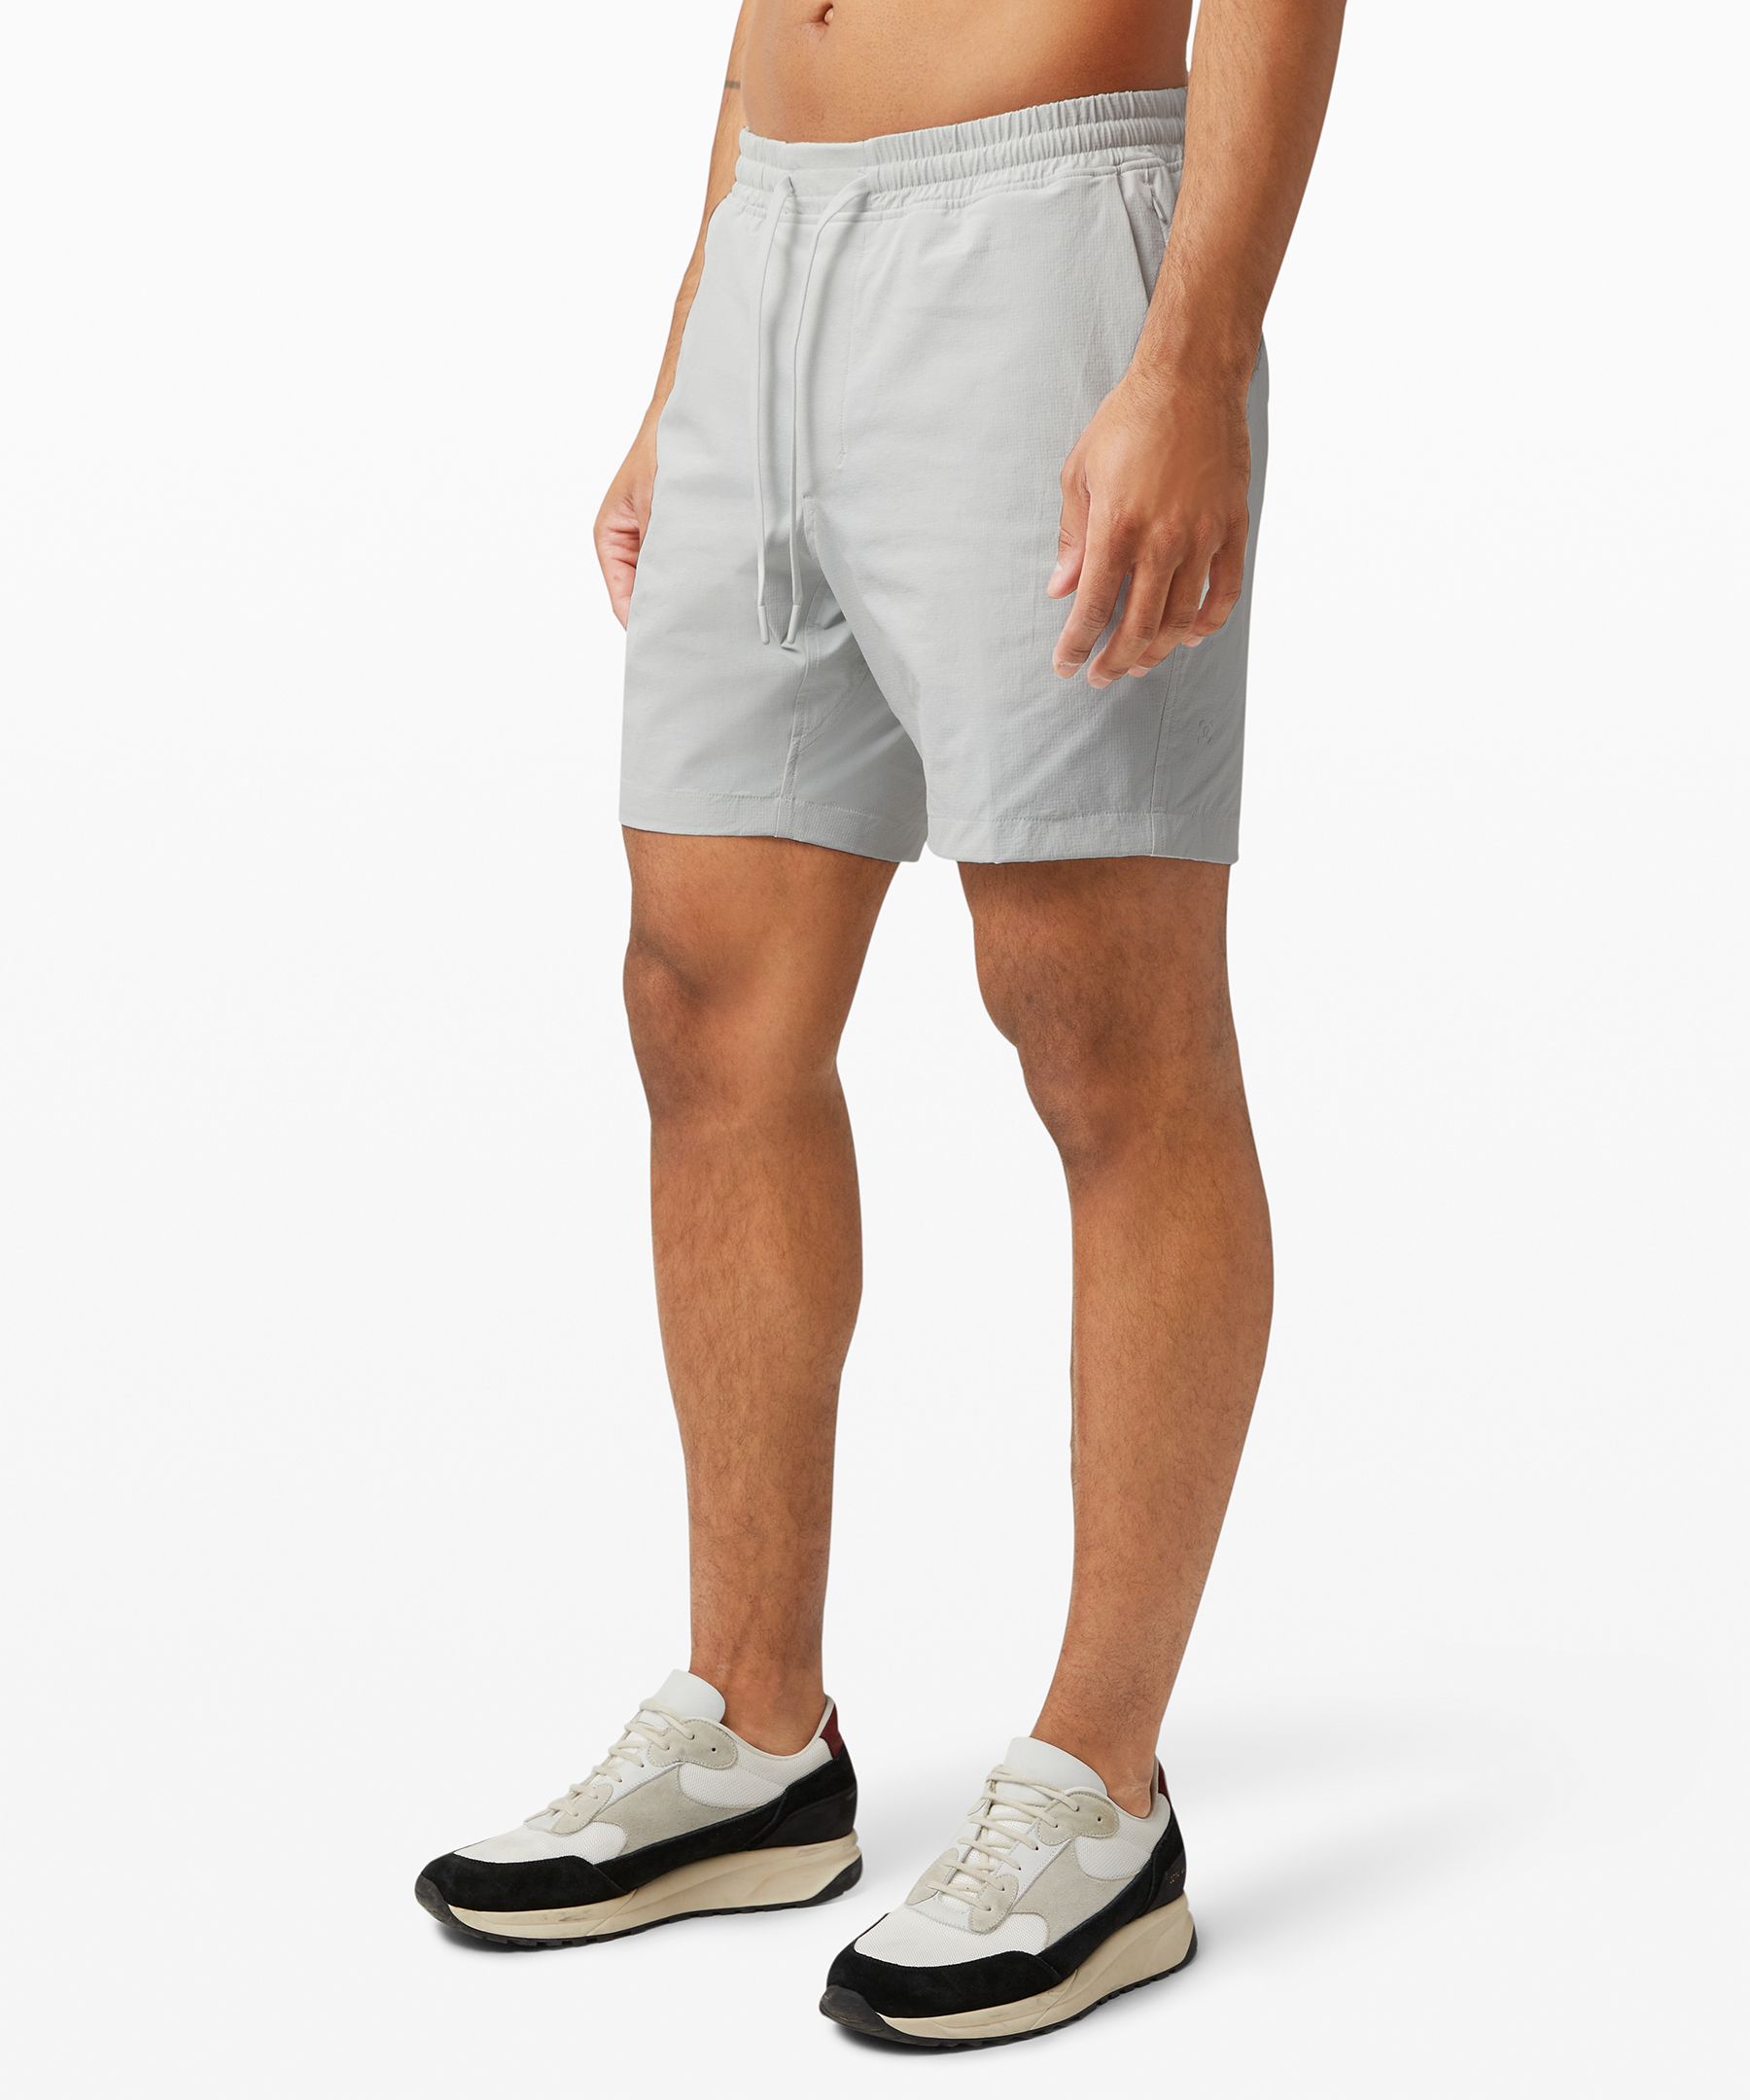 lululemon shorts uk